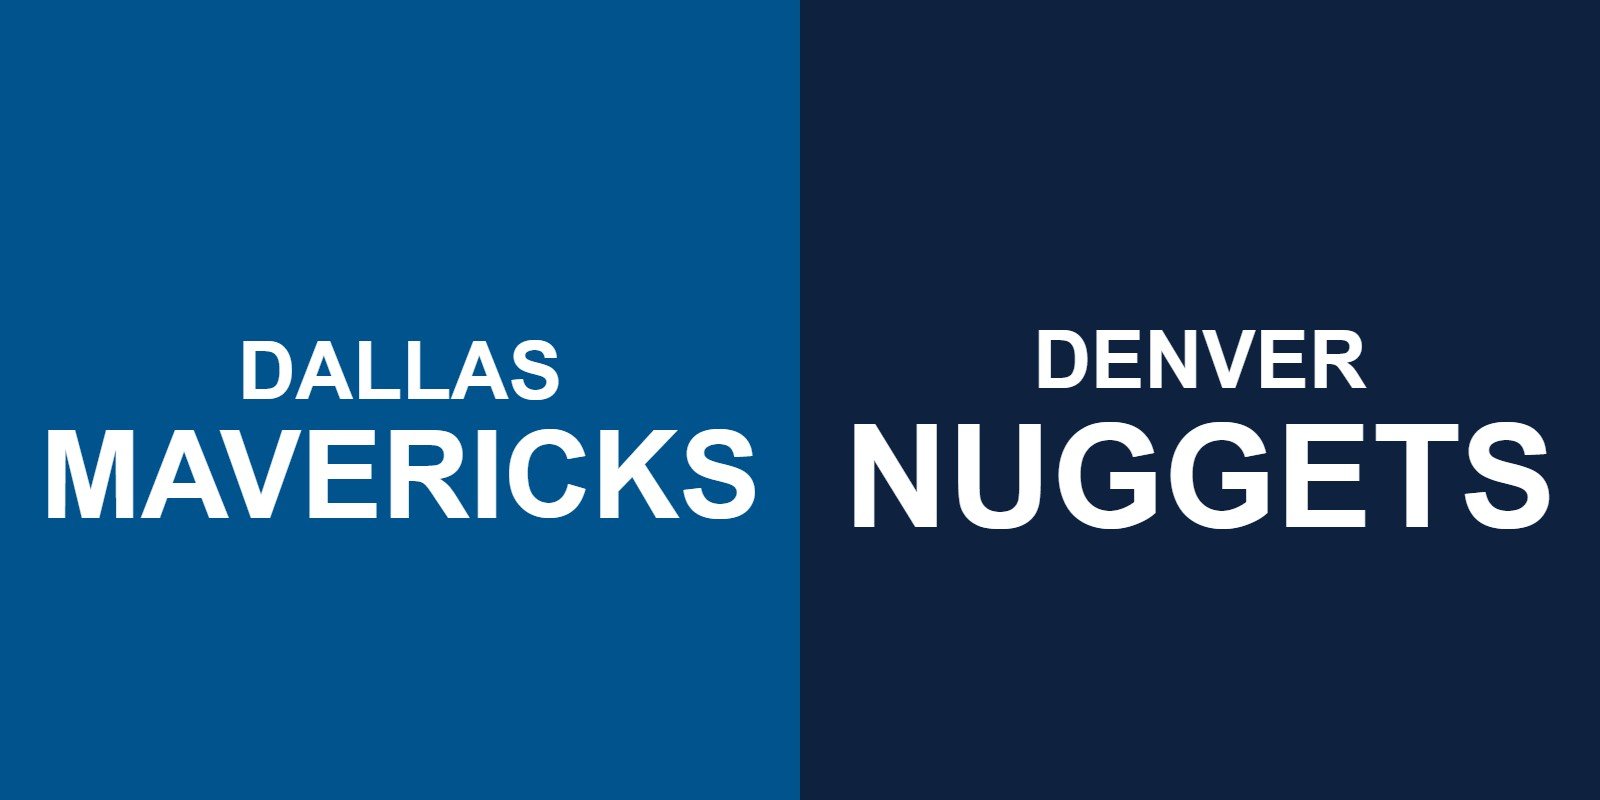 Mavericks vs Nuggets Tickets